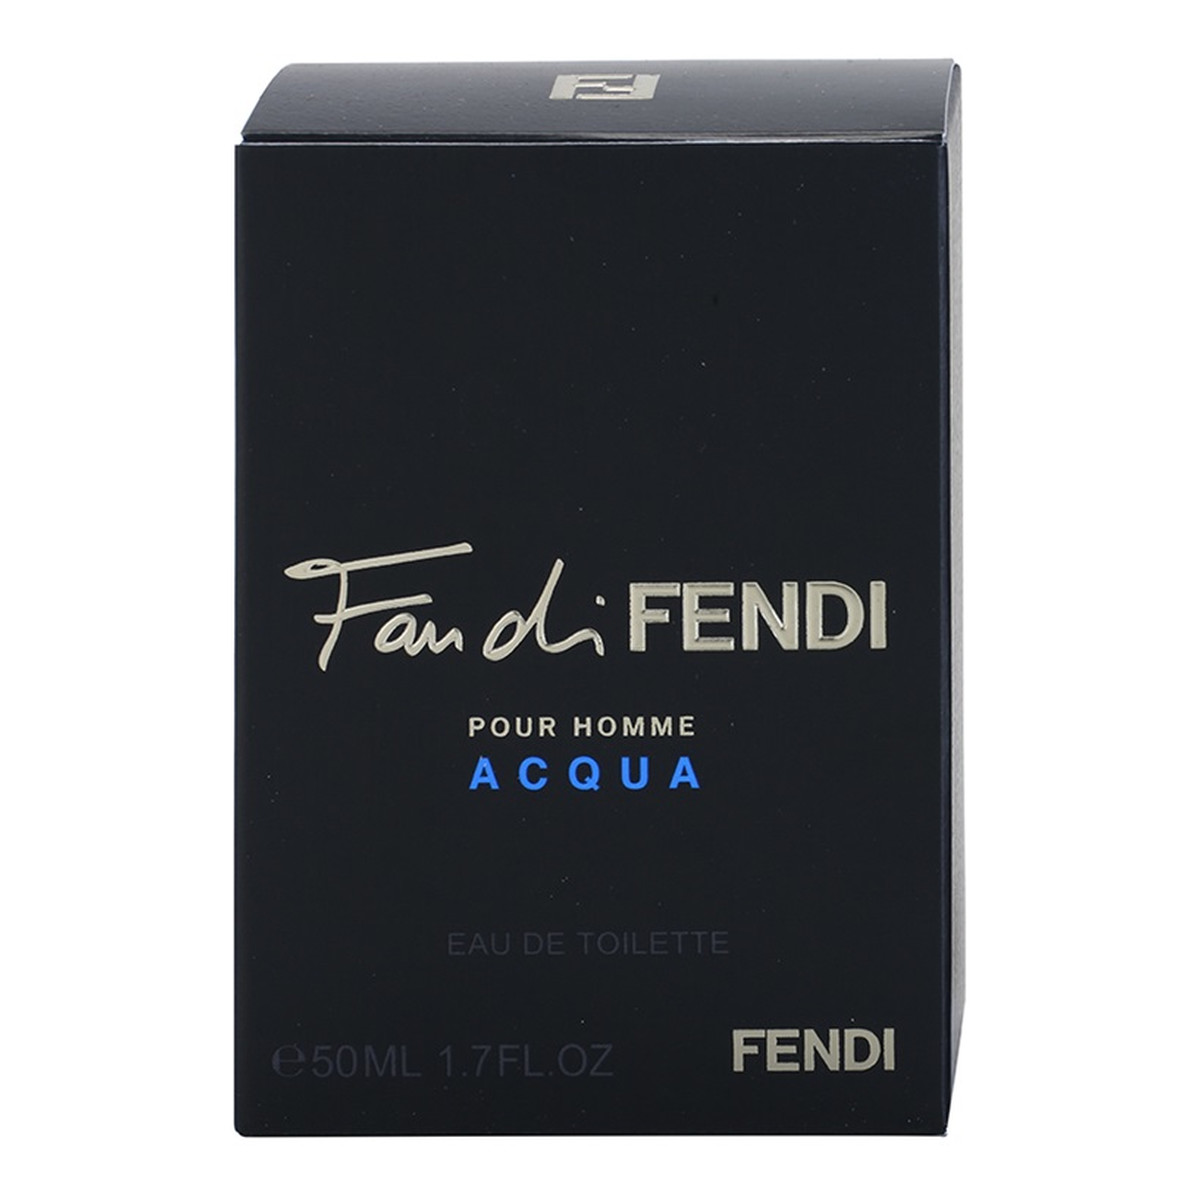 Fendi Fan di Fendi Acqua woda toaletowa 50ml